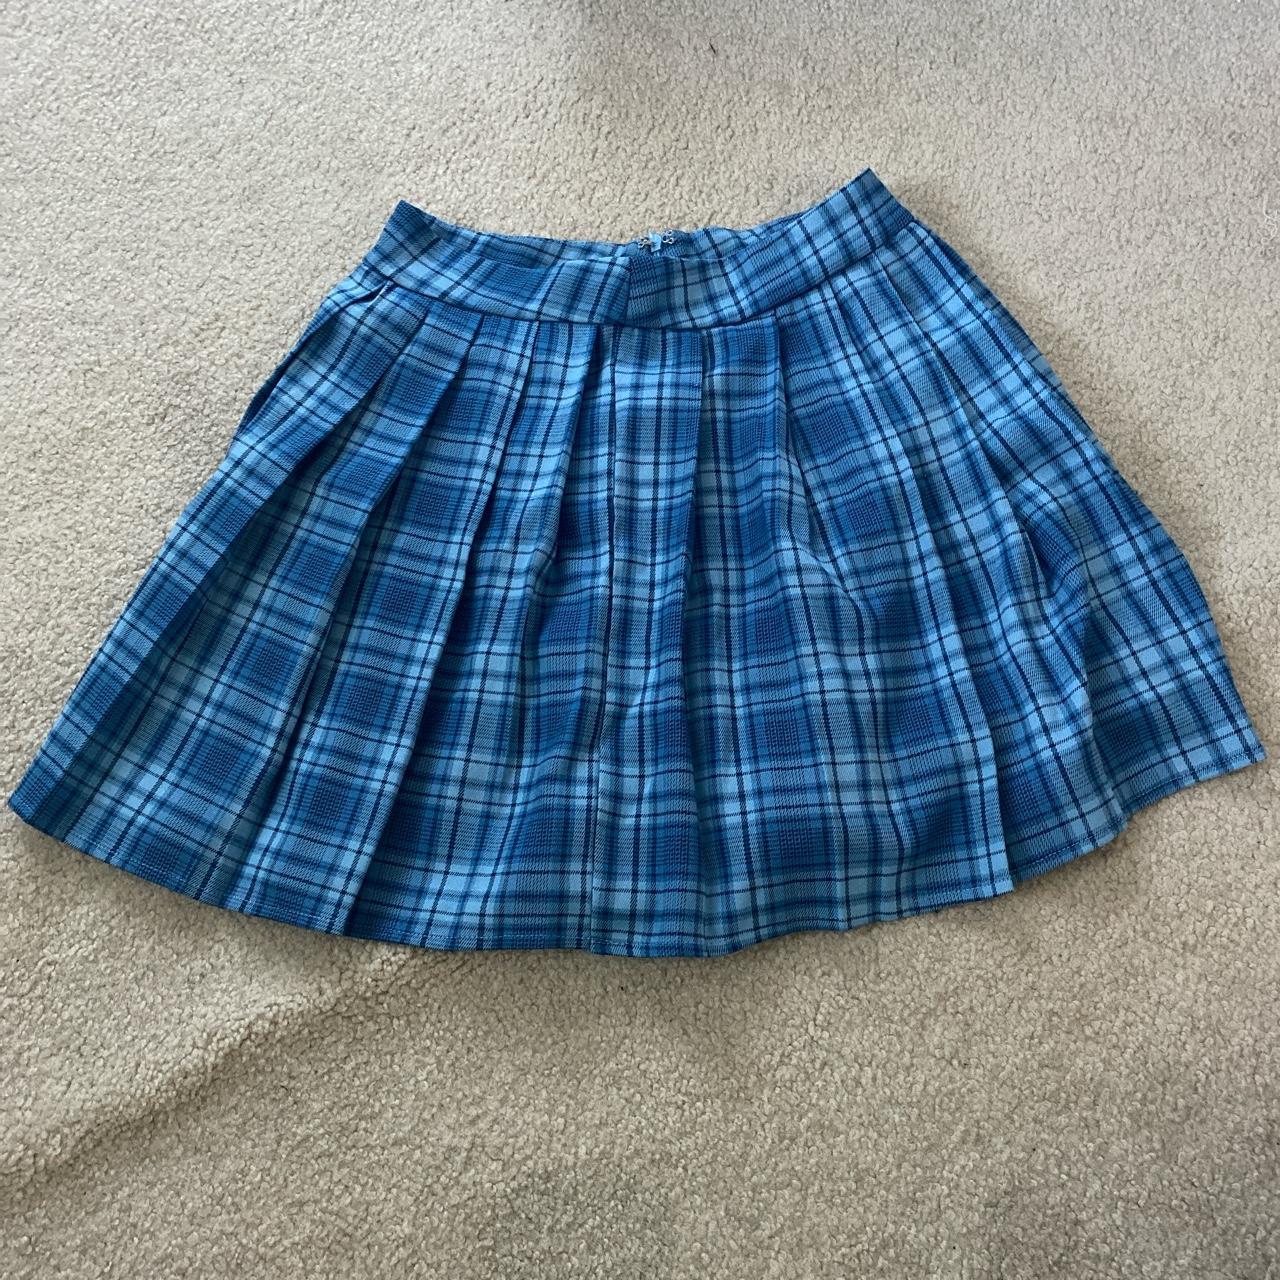 Plaid blue mini skirt #plaid #miniskirt #schoolgirl... - Depop